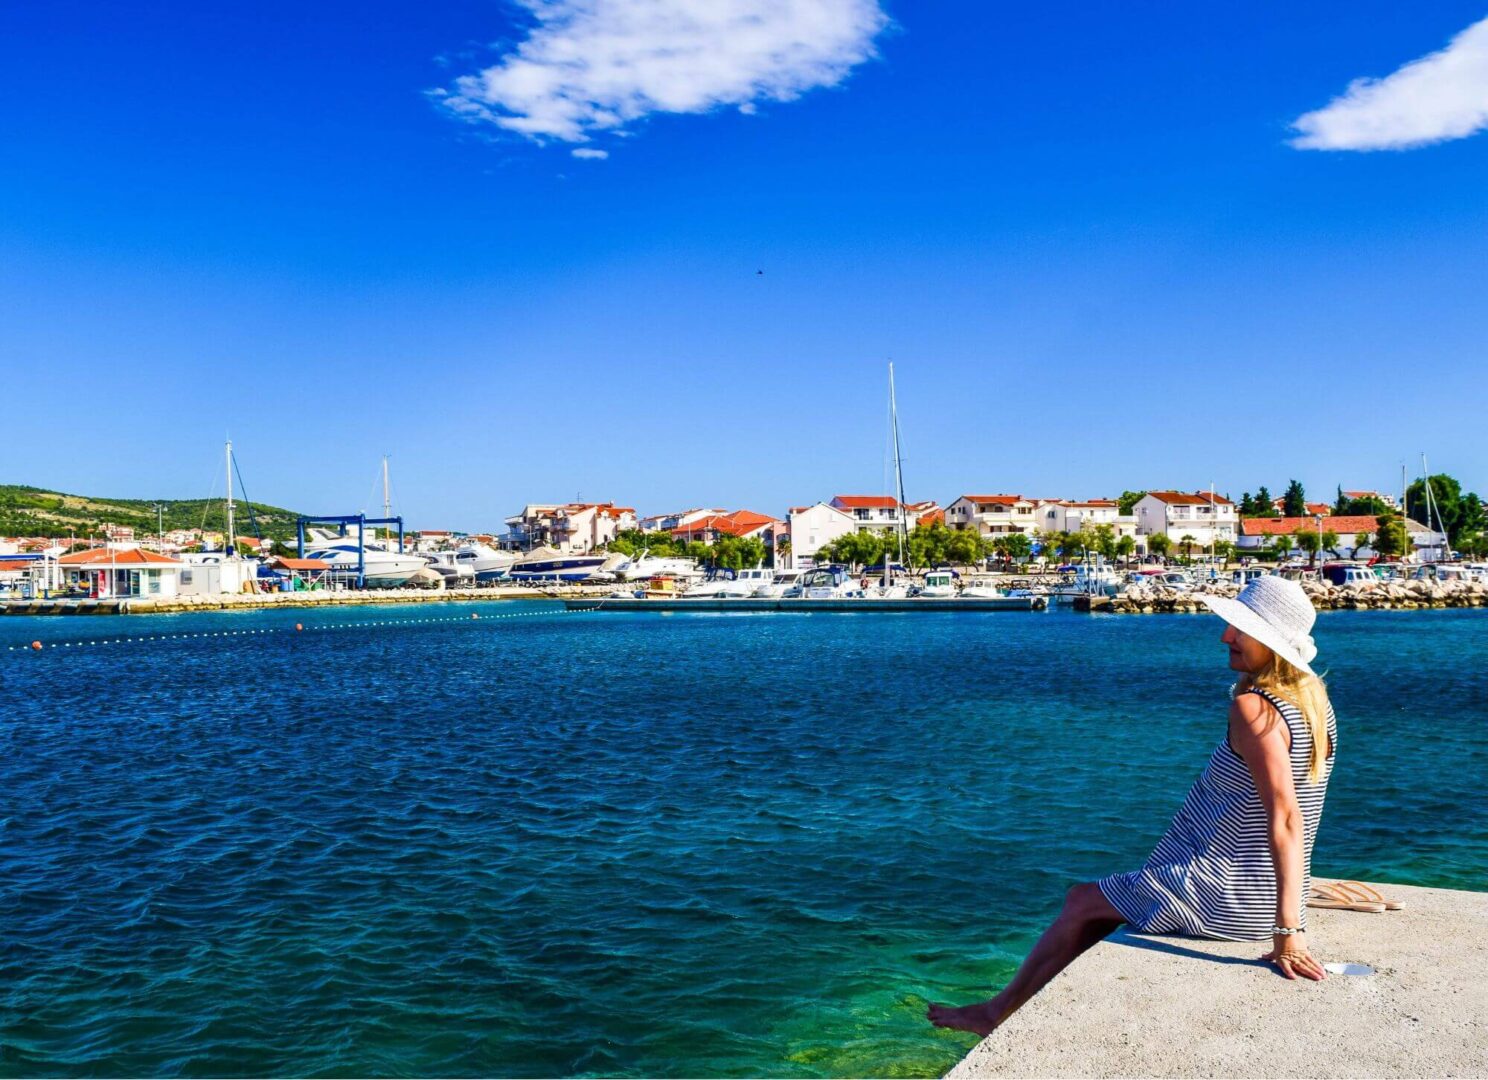 Croatie - La riviera d'argent. JVO Voyages votre agence de voyages en groupe par excellence, organise des excursions. Vodice.